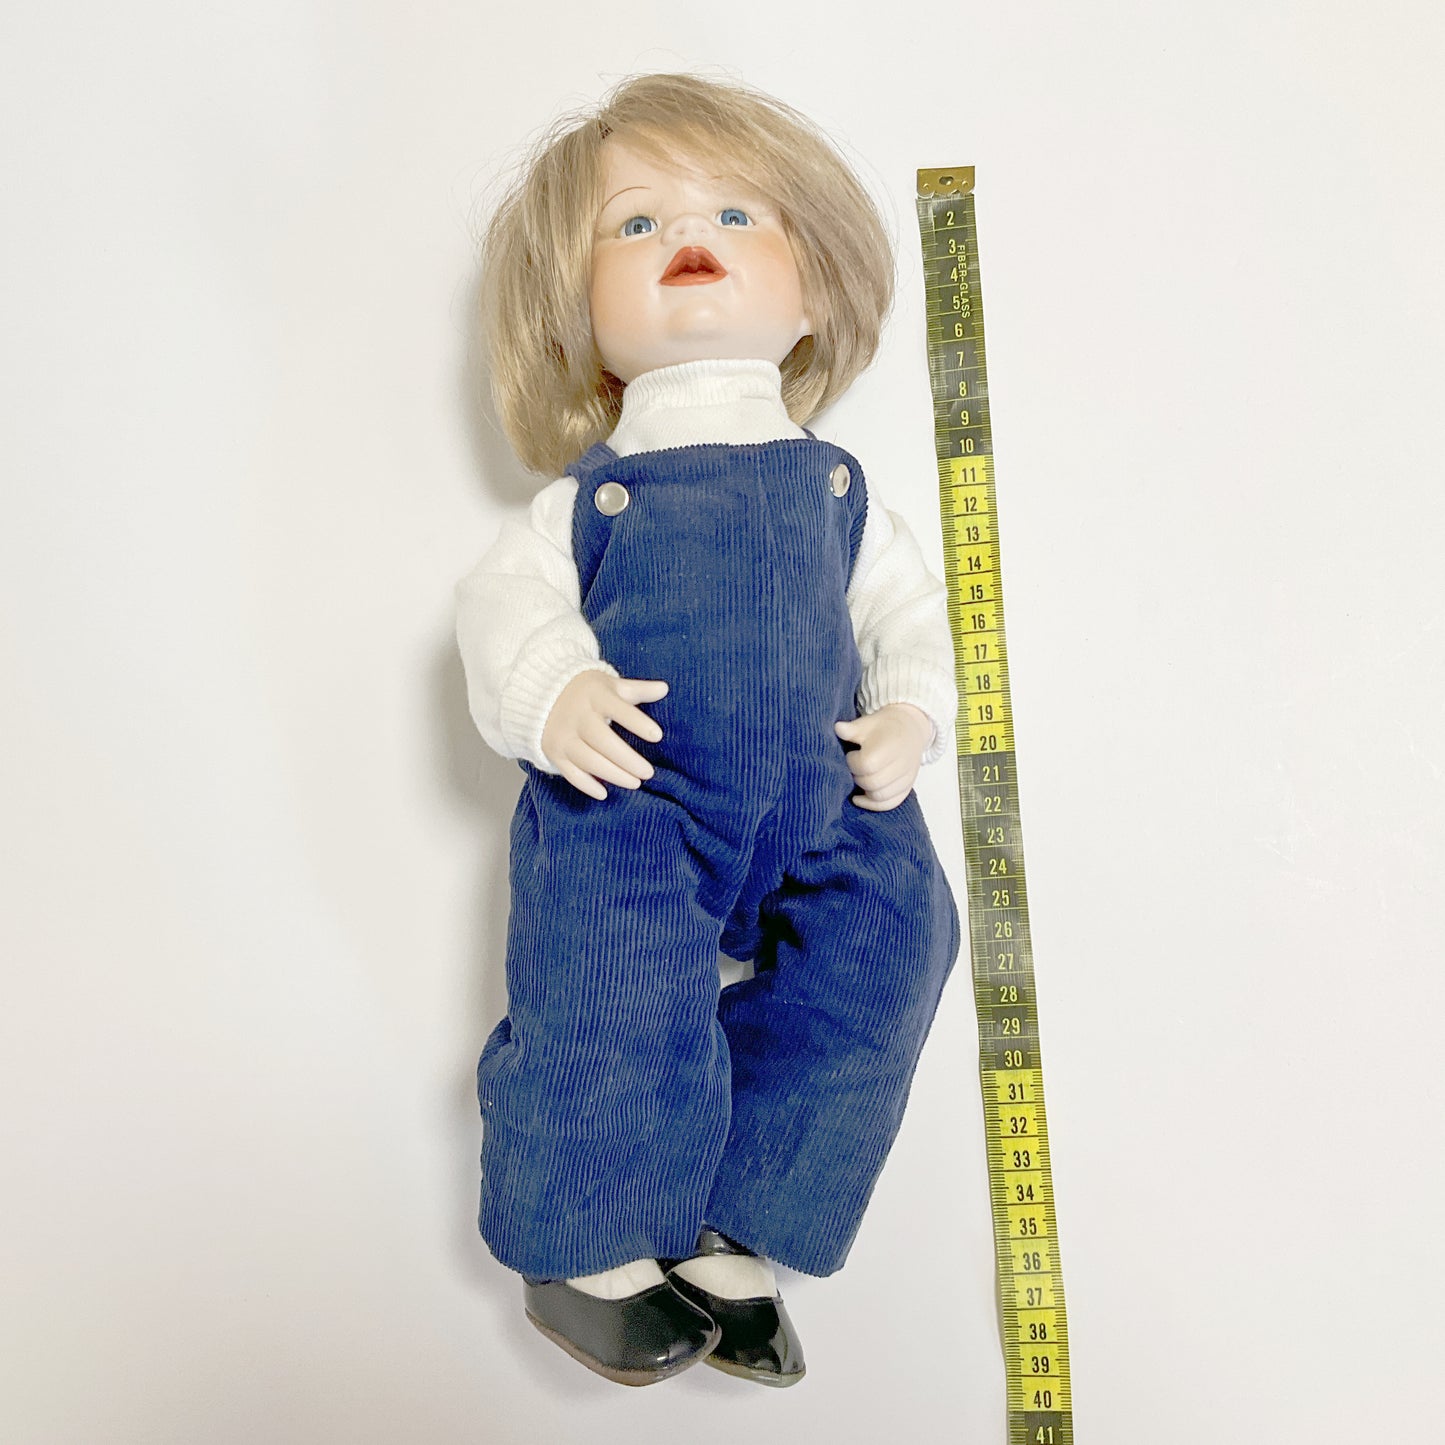 Vintage Boots Tyner Design 1987 Porcelain Boy Doll